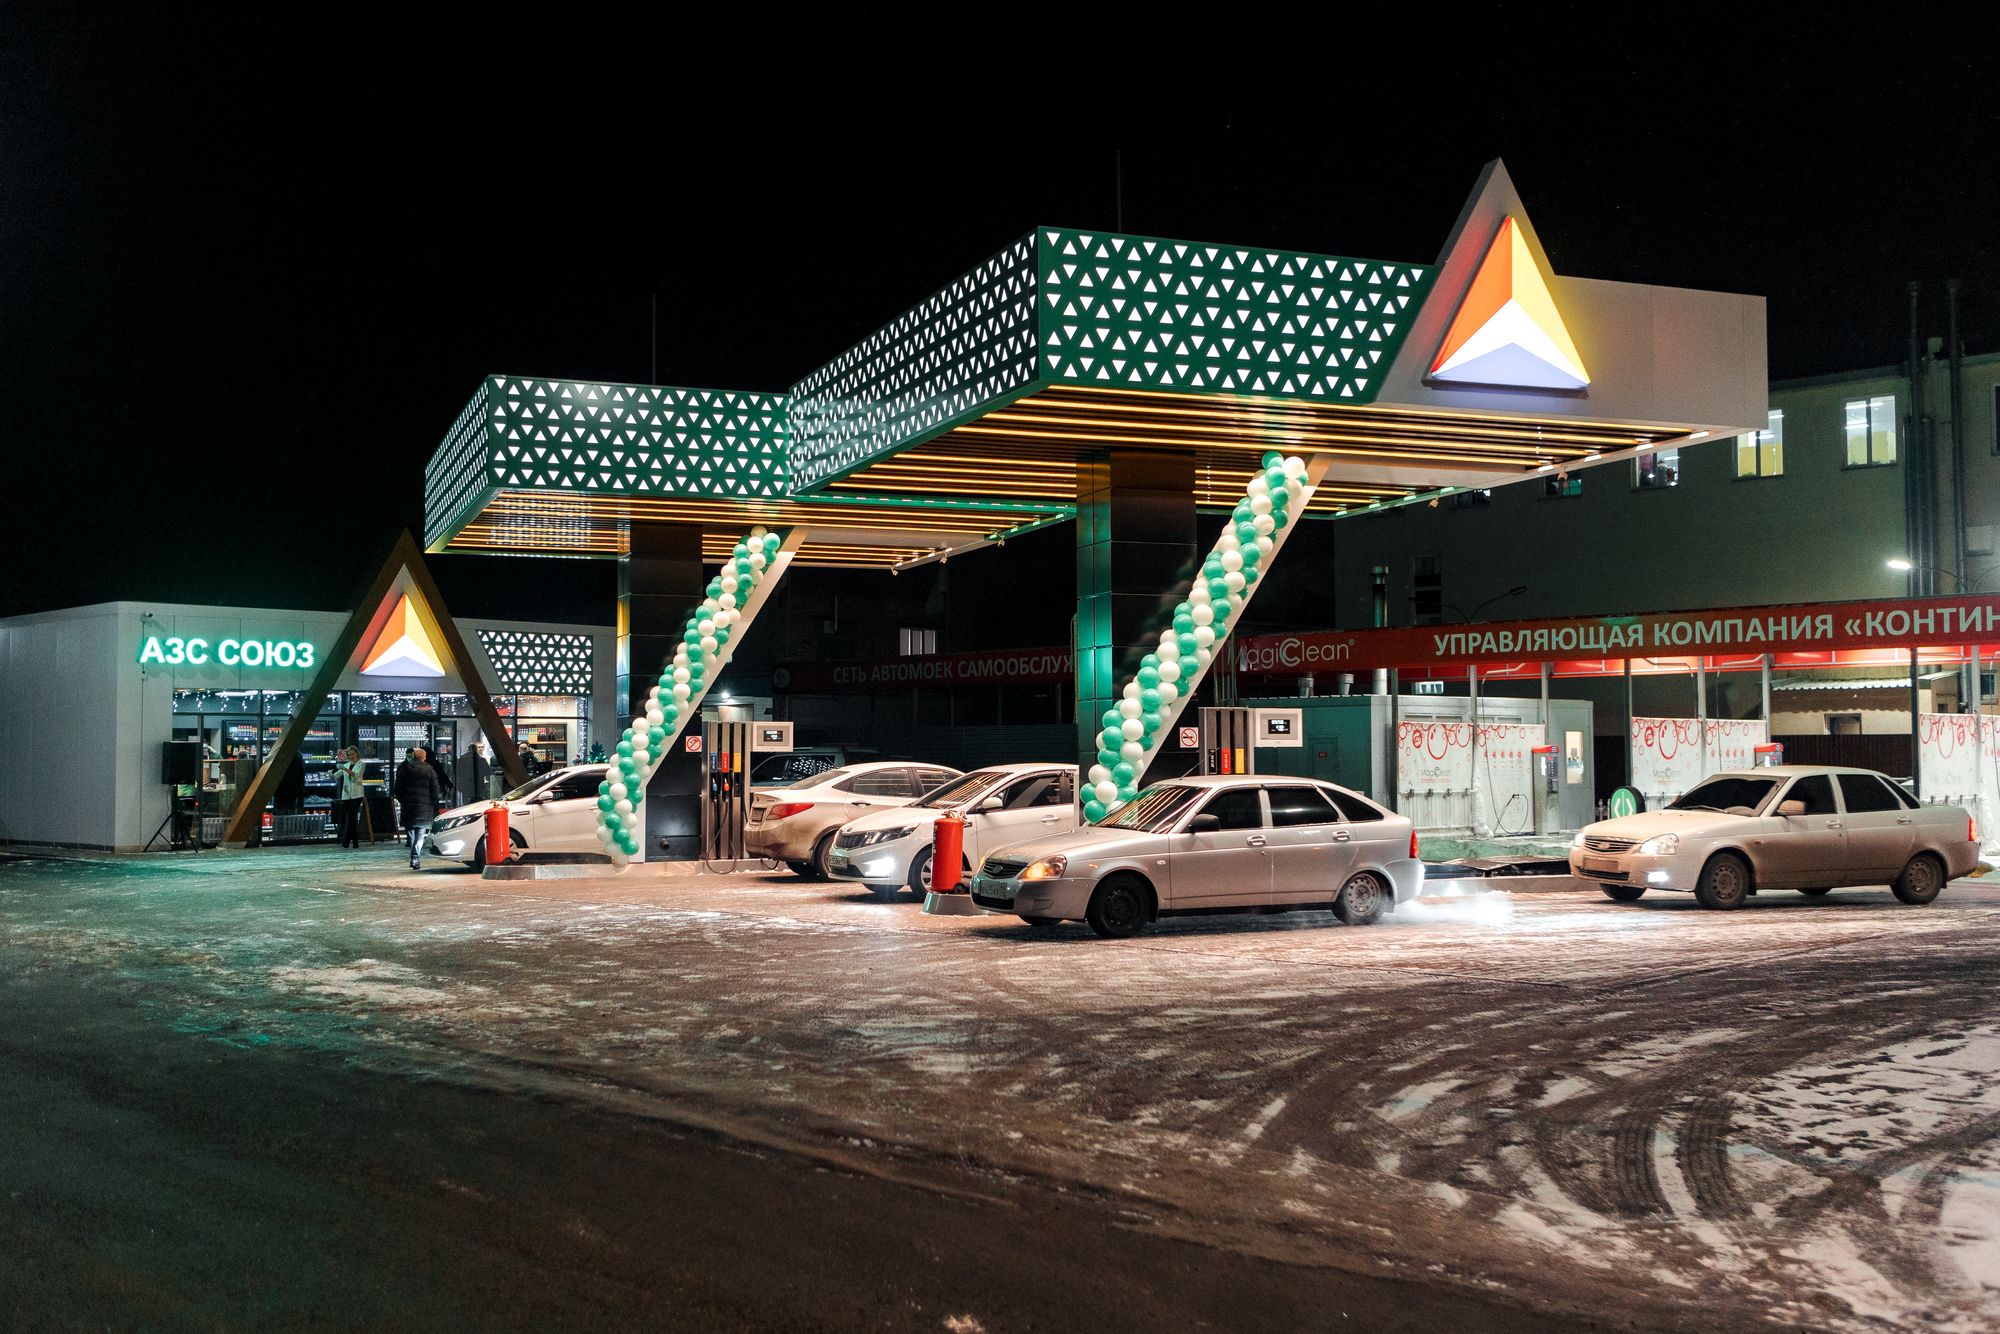 Автозаправочная станция АЗС Союз Пенза Россия